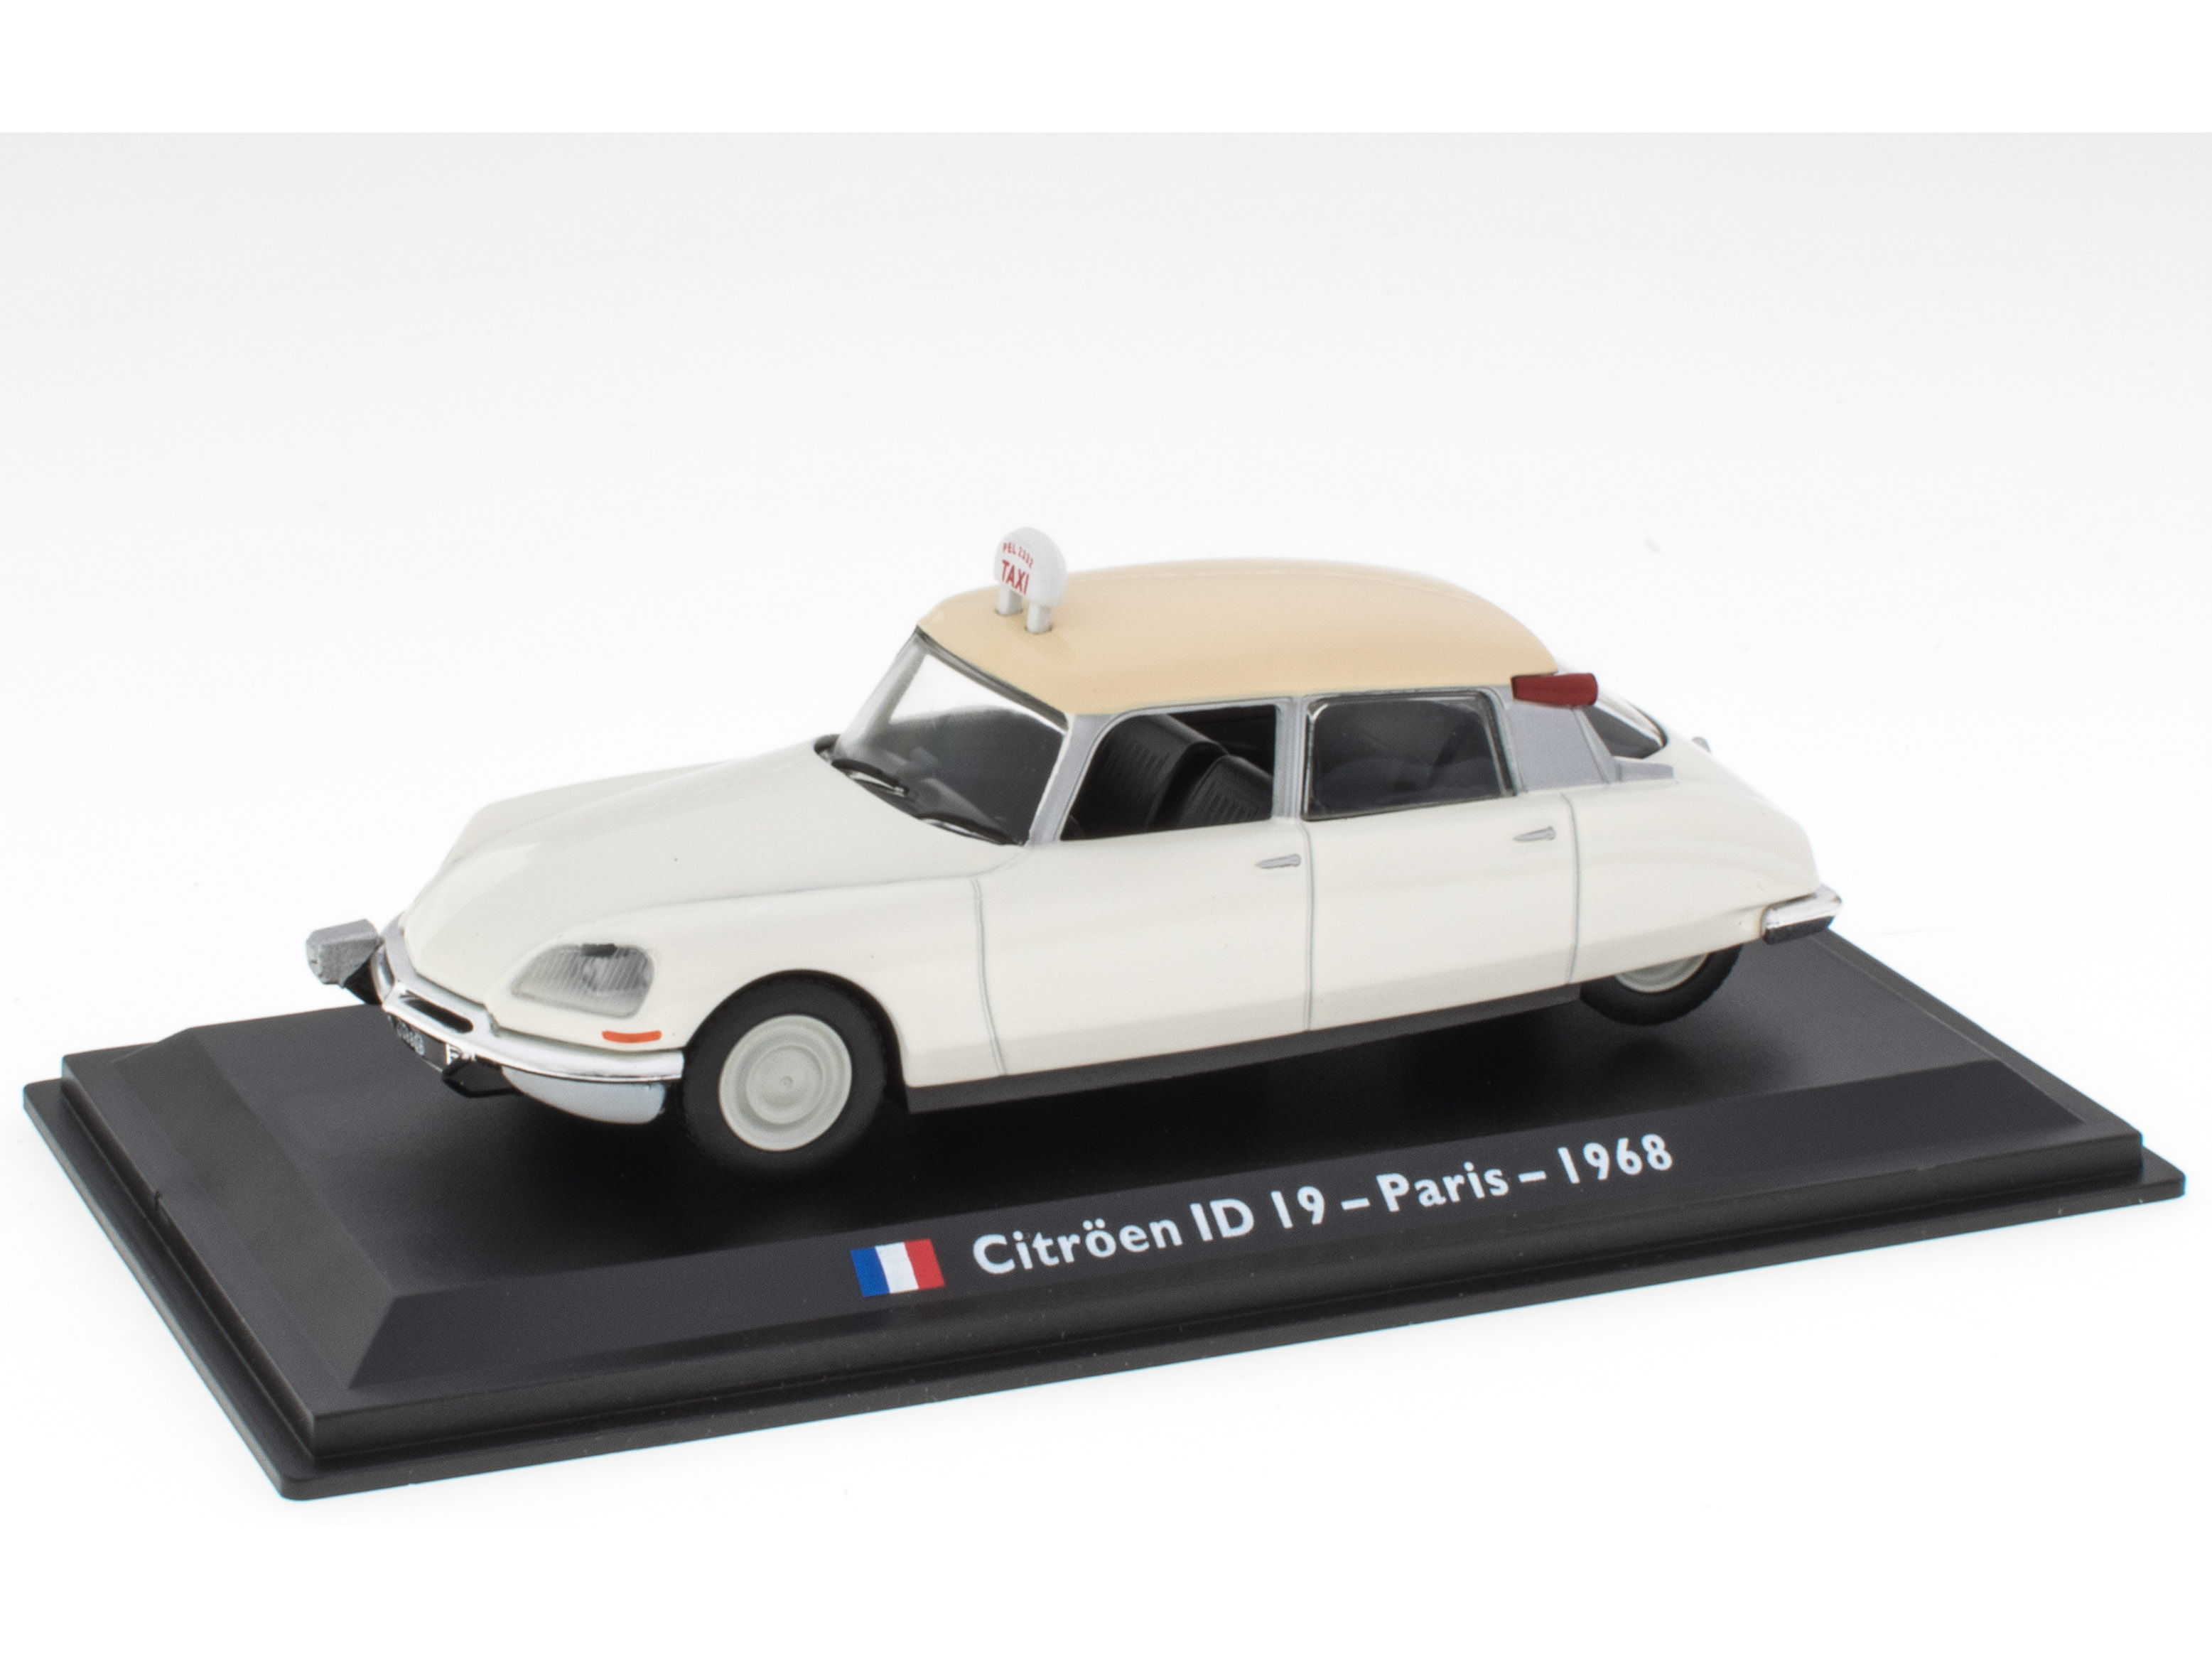 Citroën ID I9 - Paris - 1968